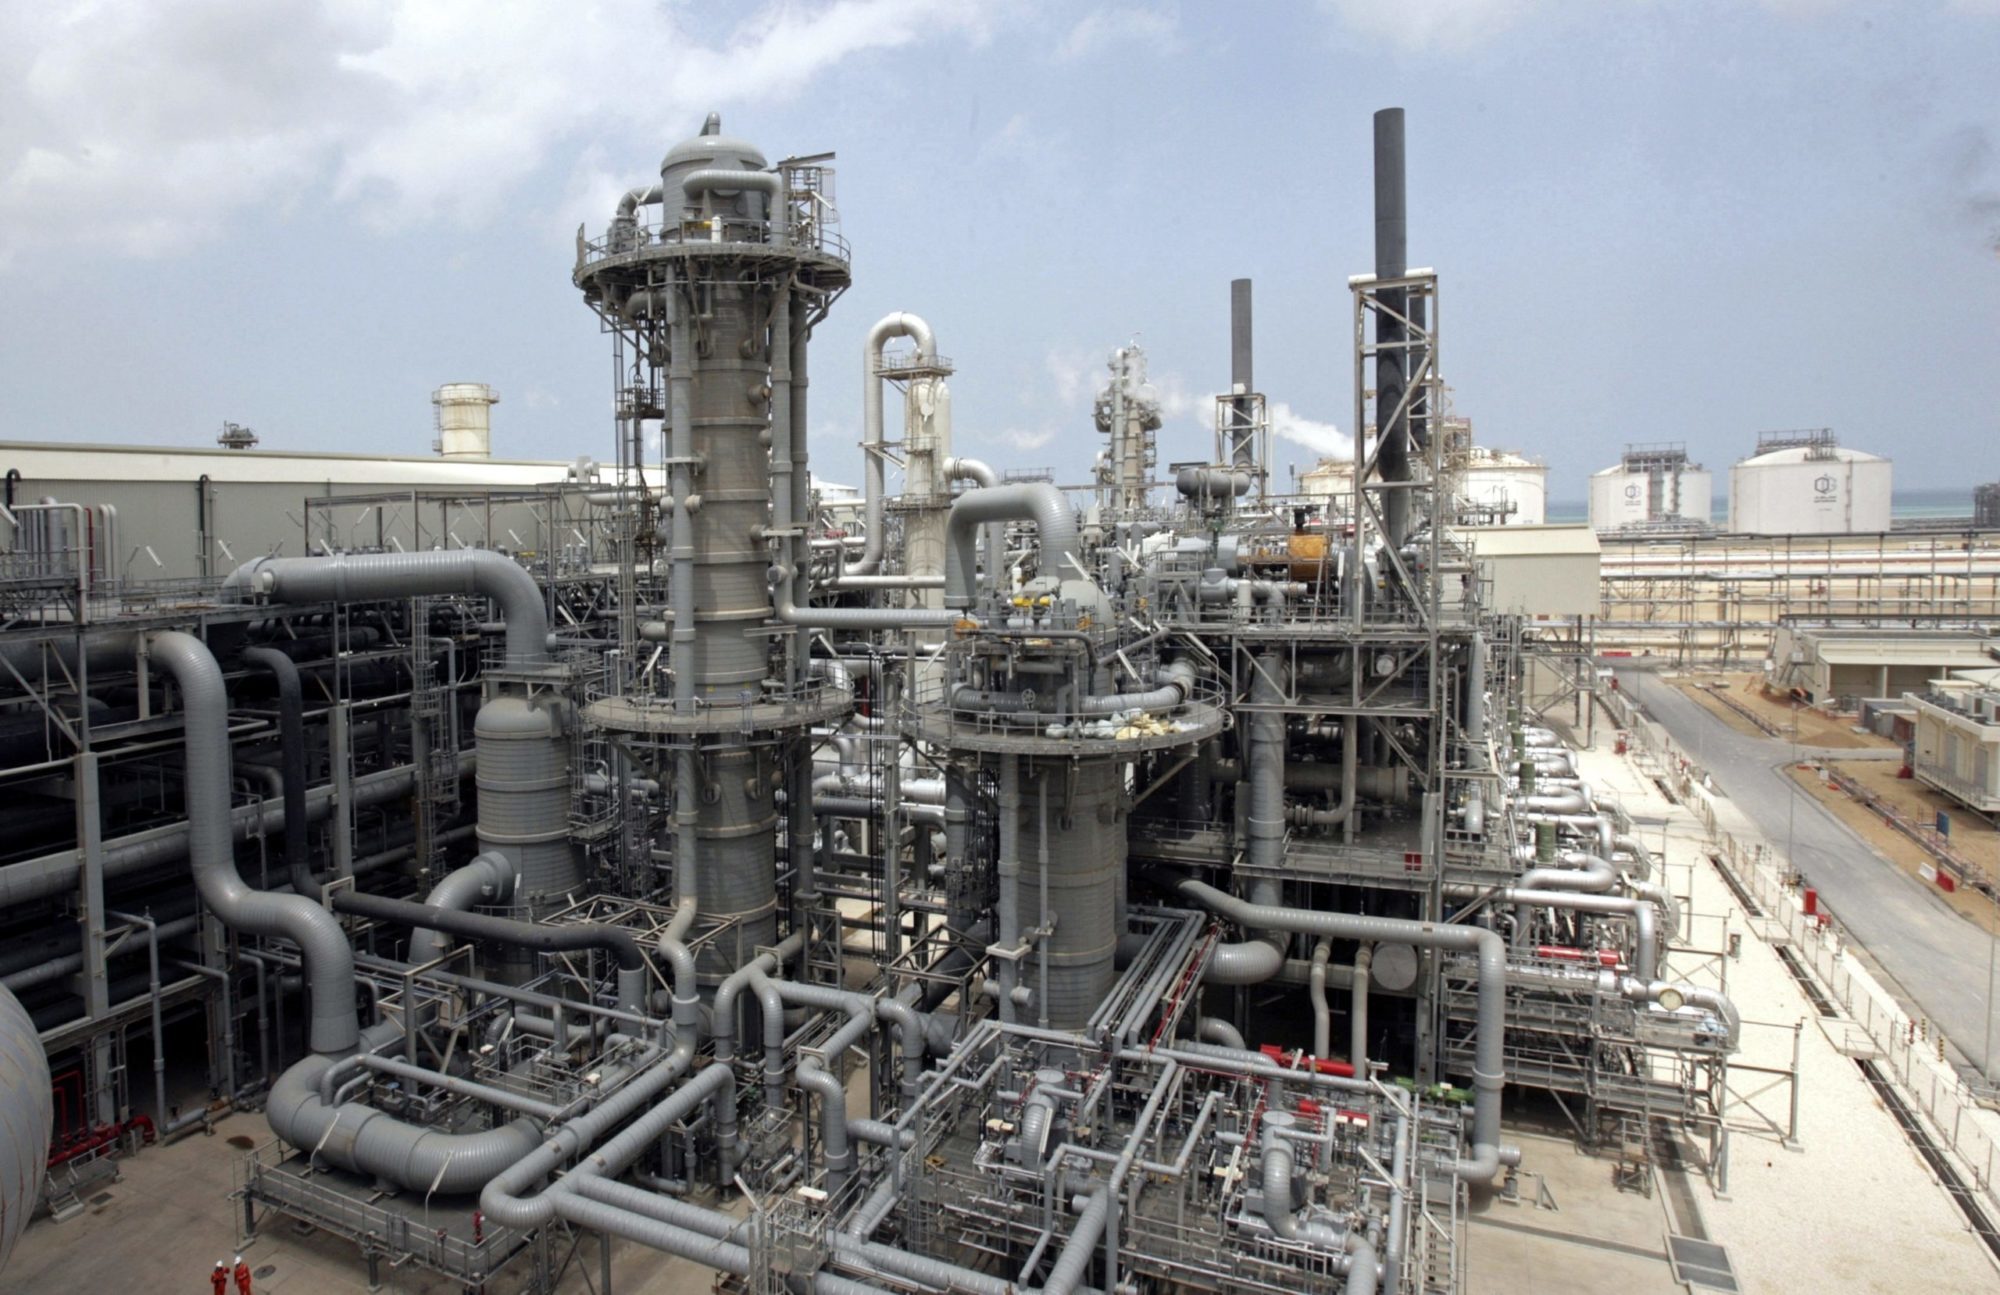 Λίβανος: Η Qatar Energy θα ενταχθεί στην κοινοπραξία εξερεύνησης πετρελαίου και φυσικού αερίου στη χώρα